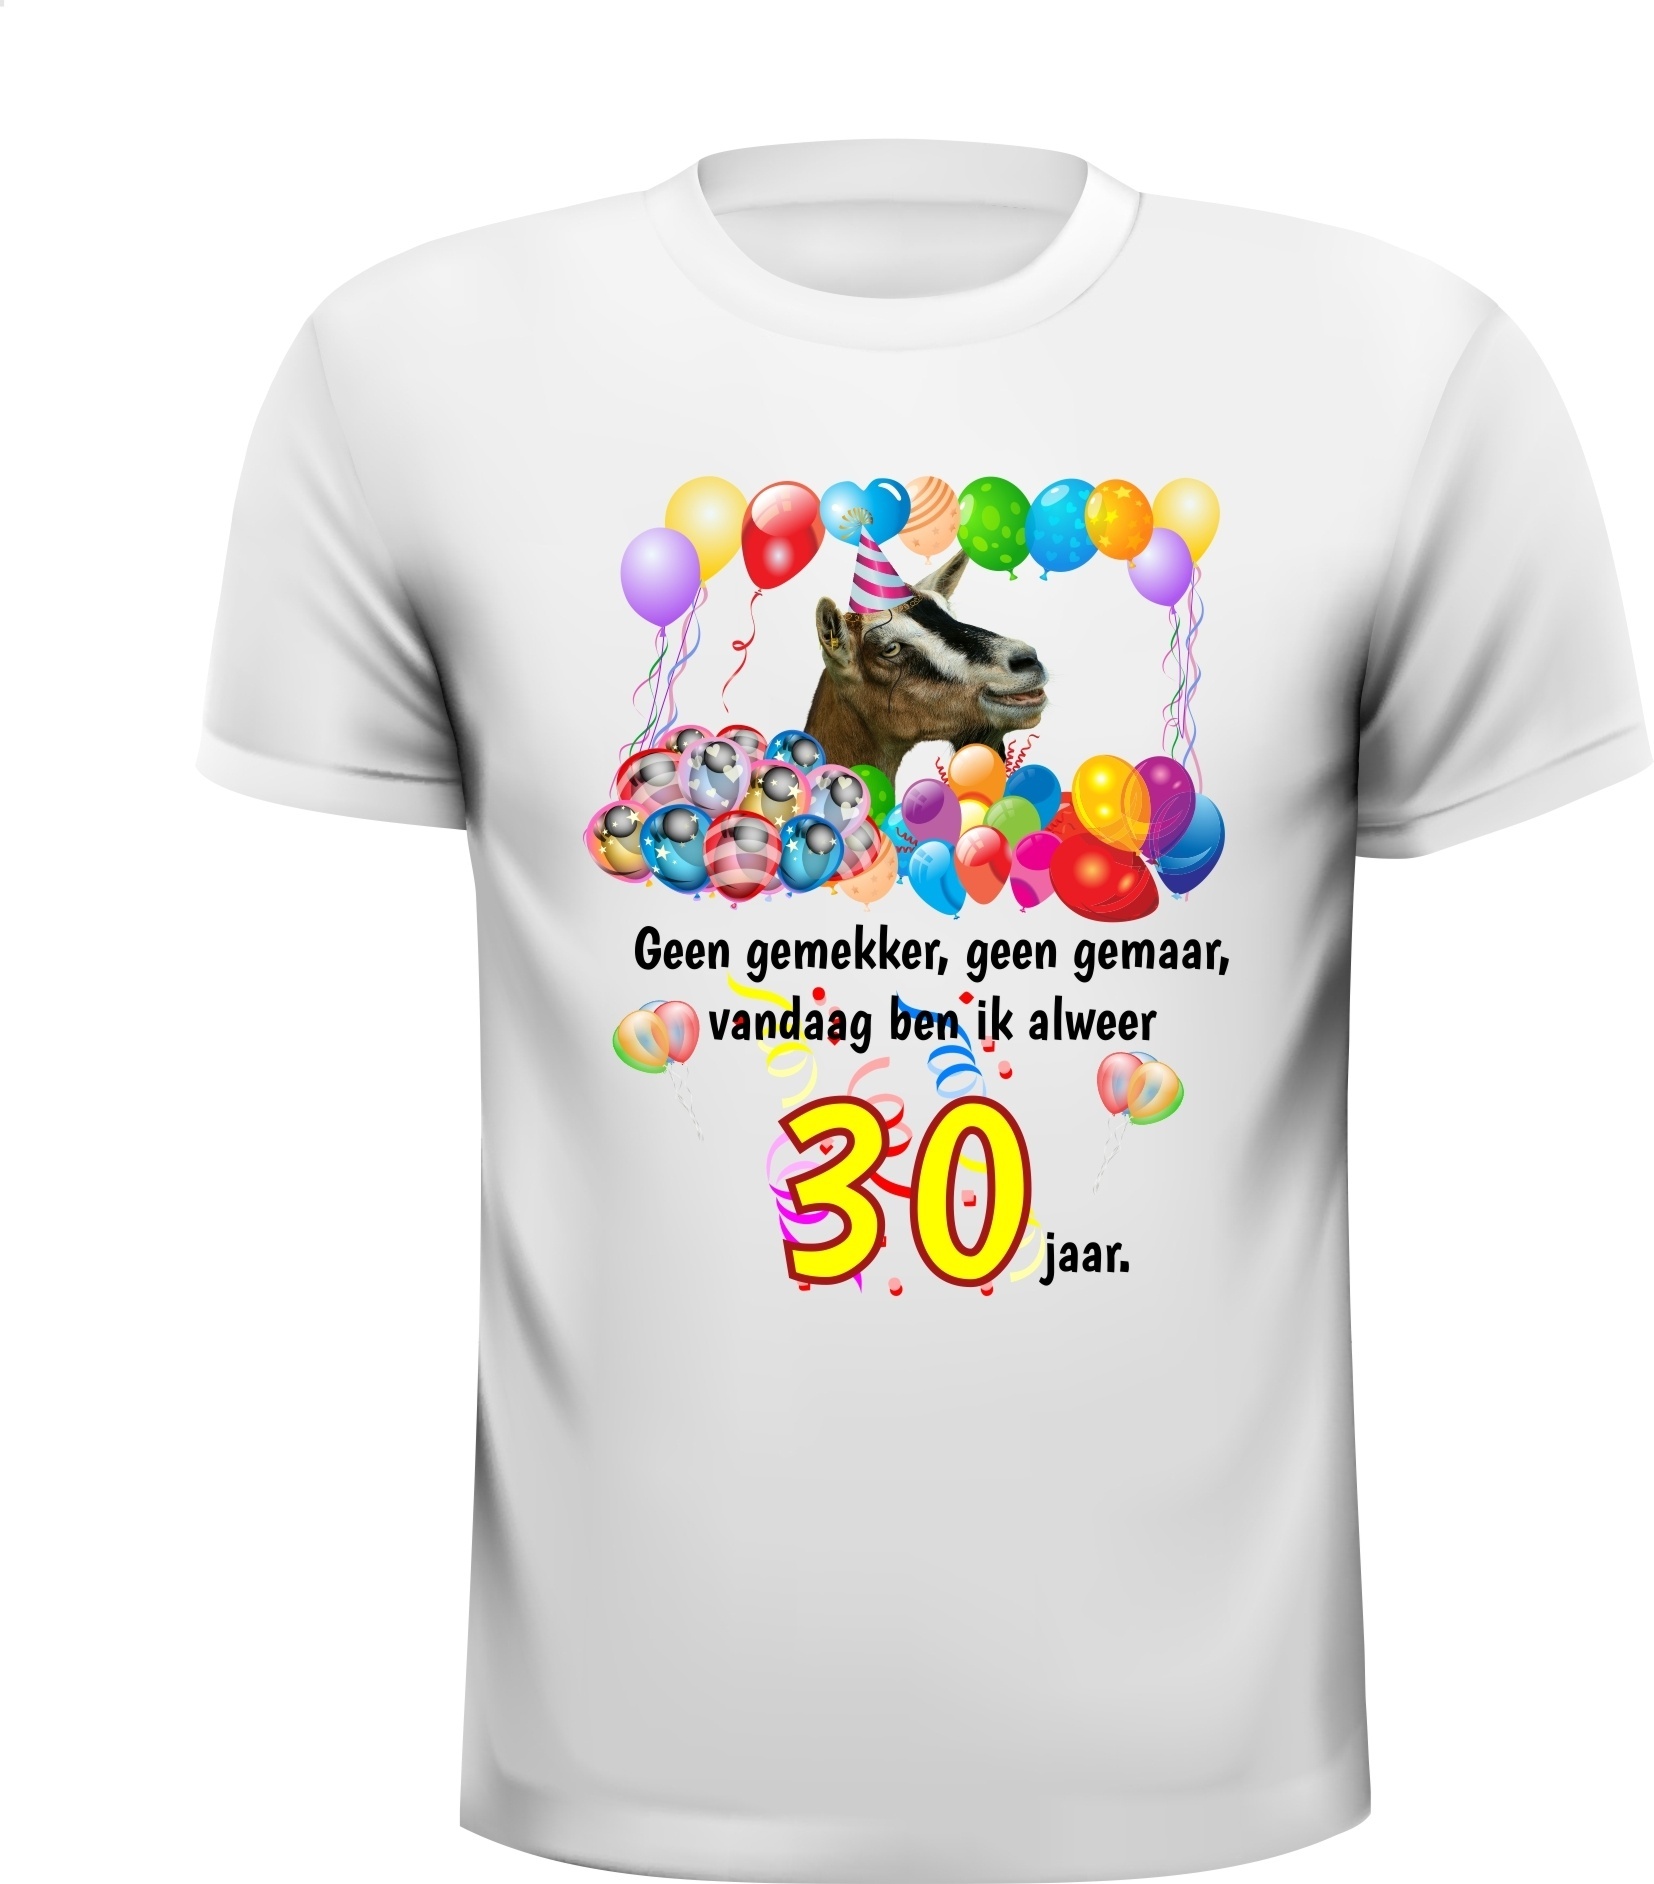 Verwonderend Vrolijk en kleurrijk verjaardag shirt 30 jaar met IV-02